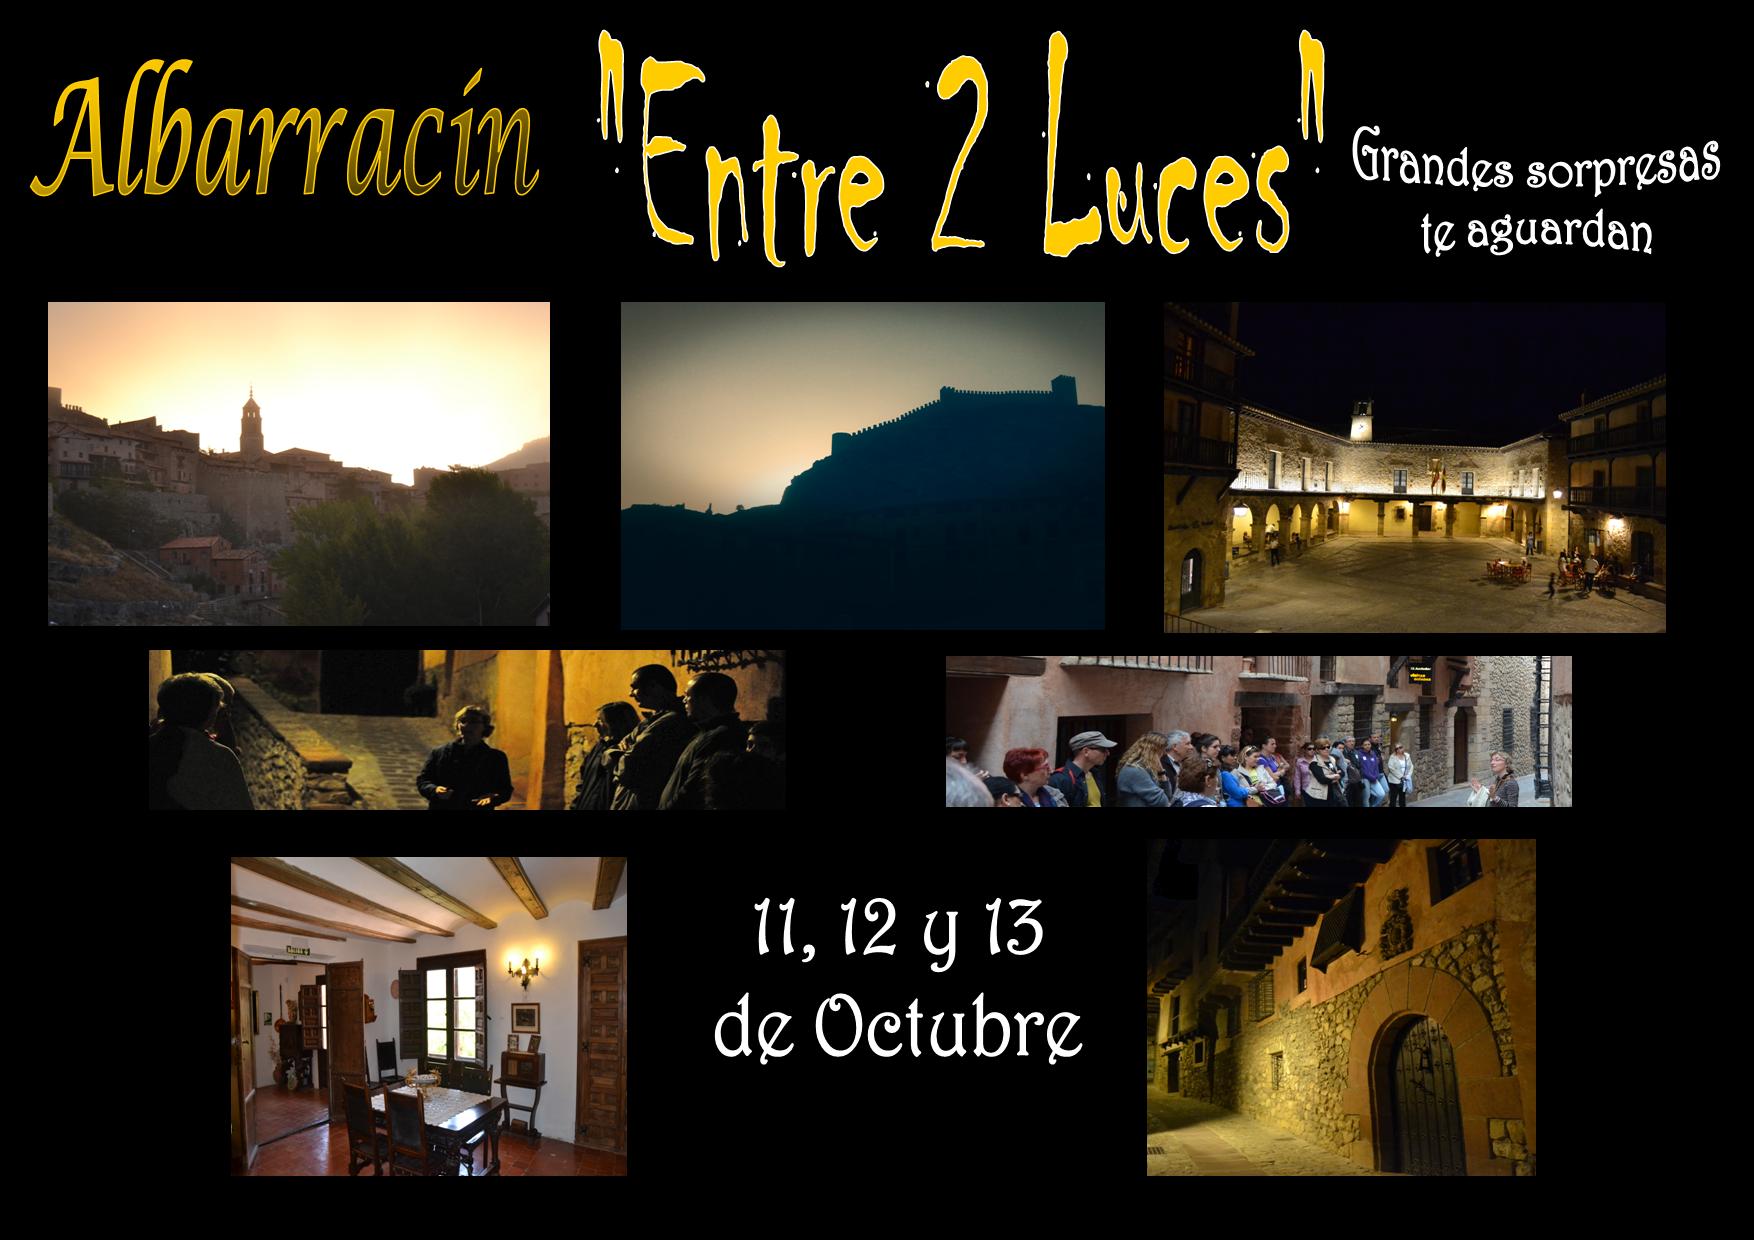 Este Puente del Pilar: Albarracín «Entre 2 Luces» con sorpresas!! 11, 12 y 13 de Octubre